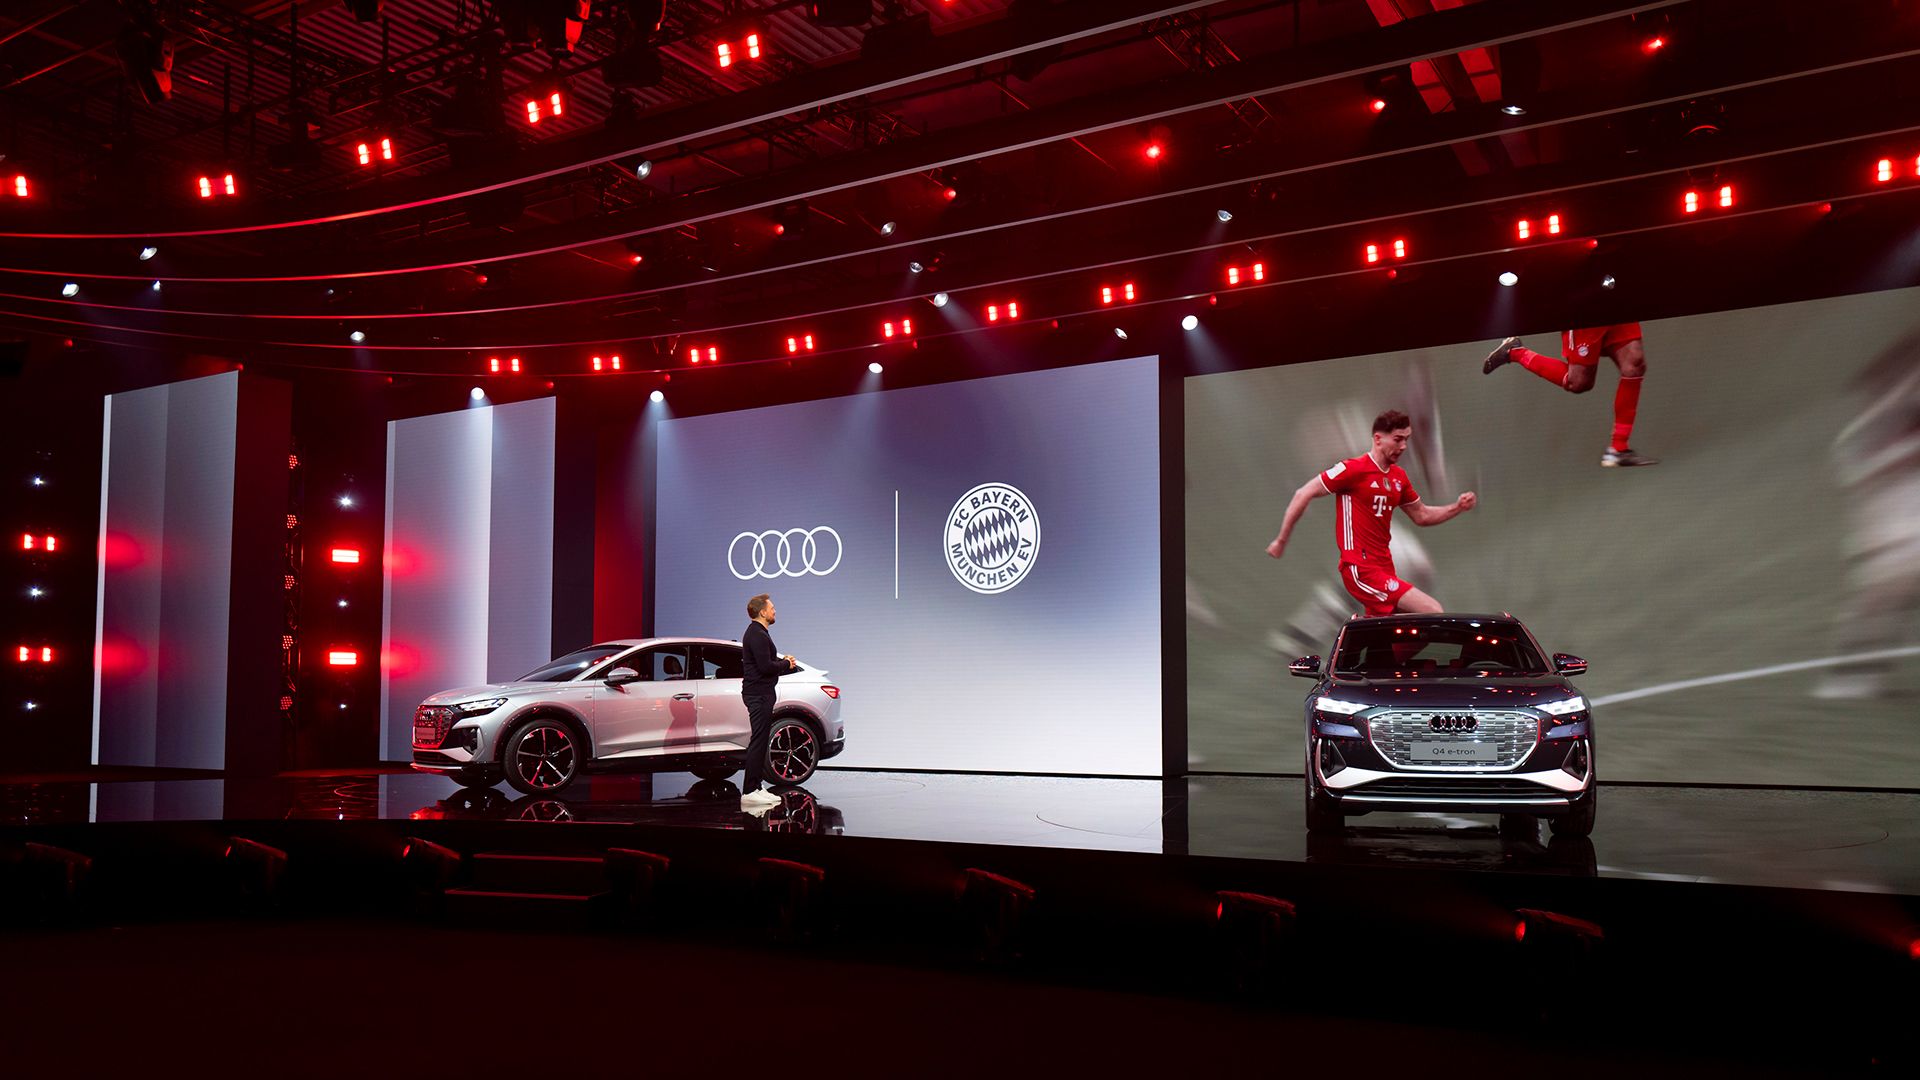 Deux modèles Audi sont sur scène. Les footballeurs apparaissent à l’écran.